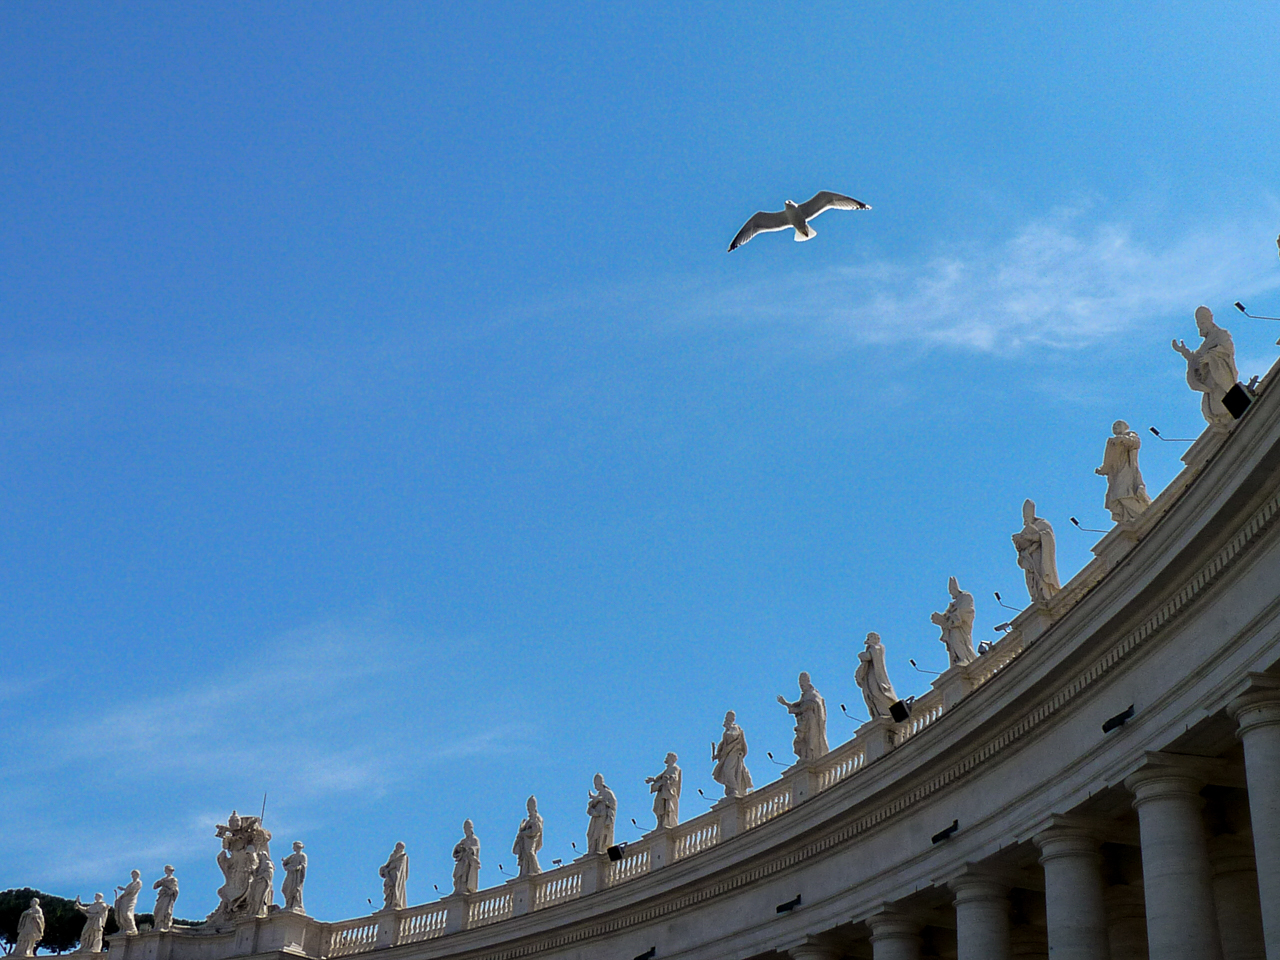 El Vaticano